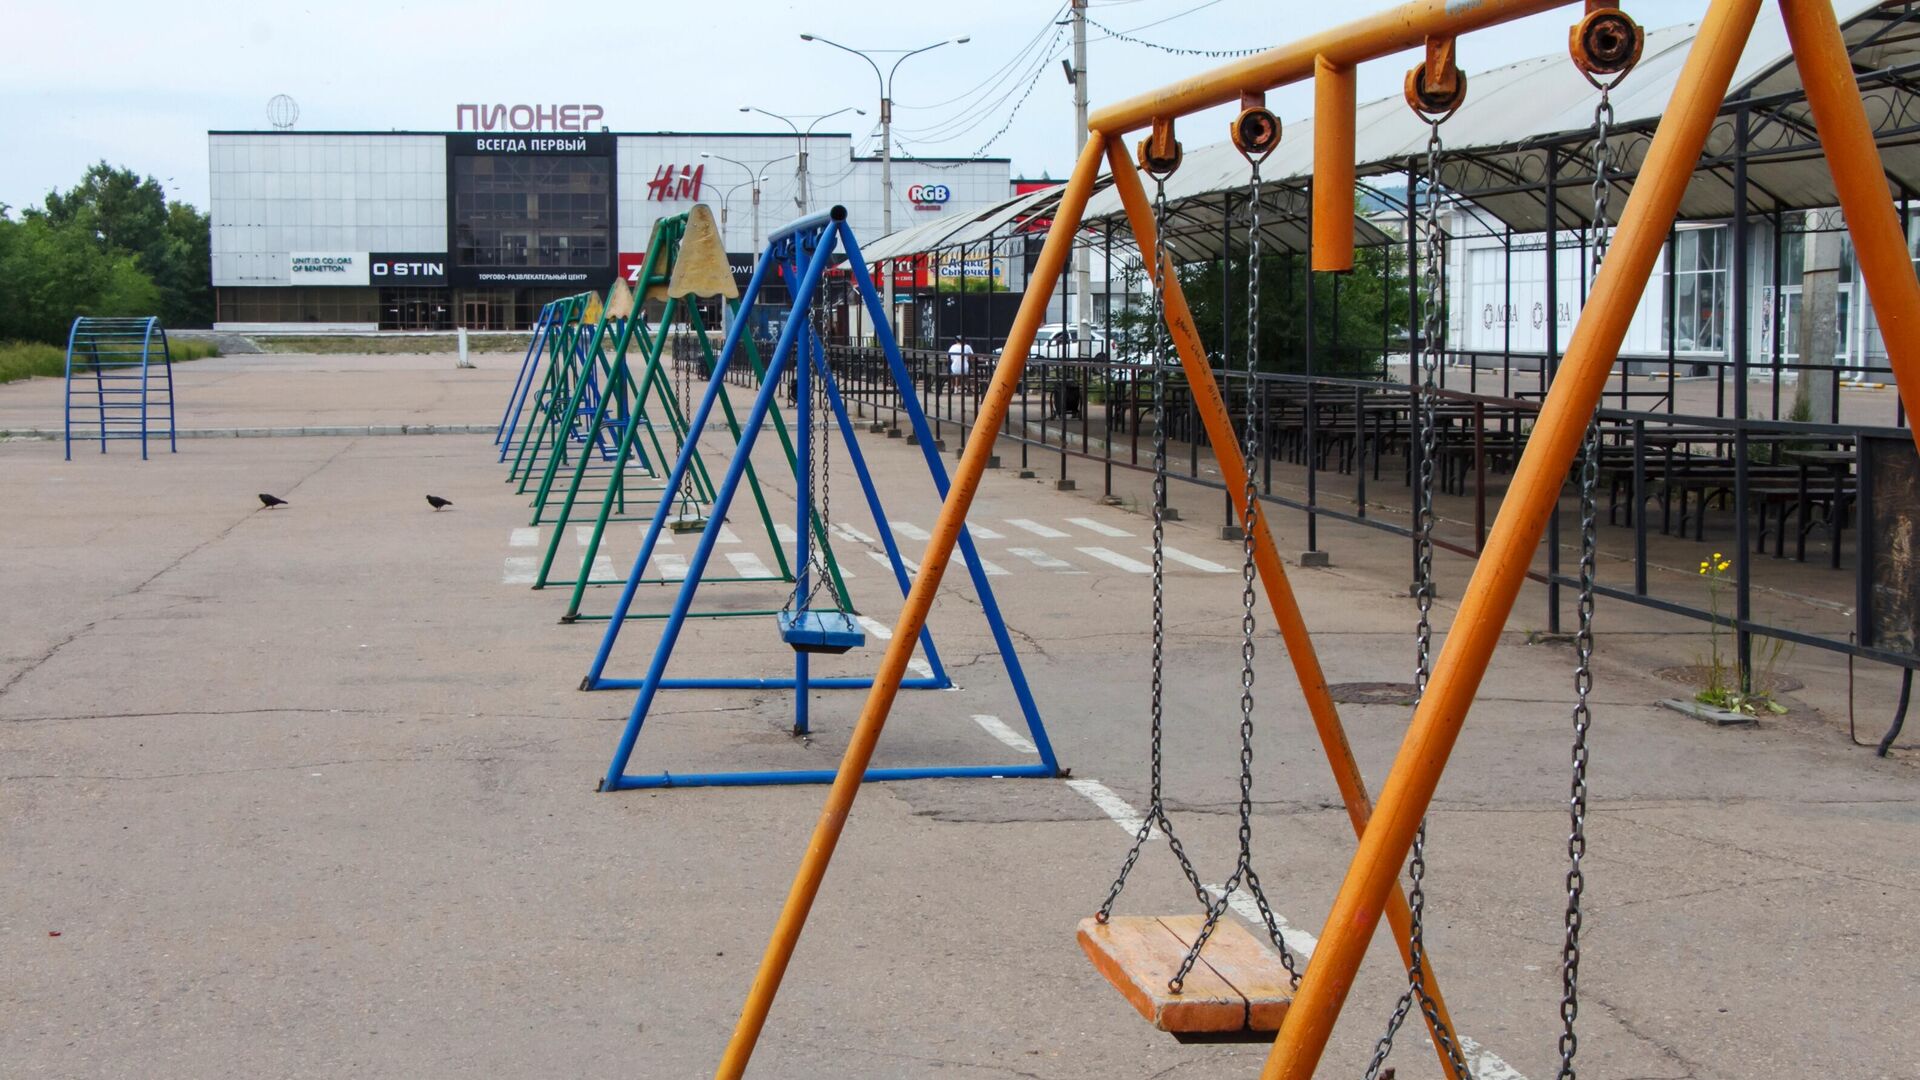 Опустевшая детская площадка у ТЦ Пионер в Улан-Удэ - РИА Новости, 1920, 12.07.2021